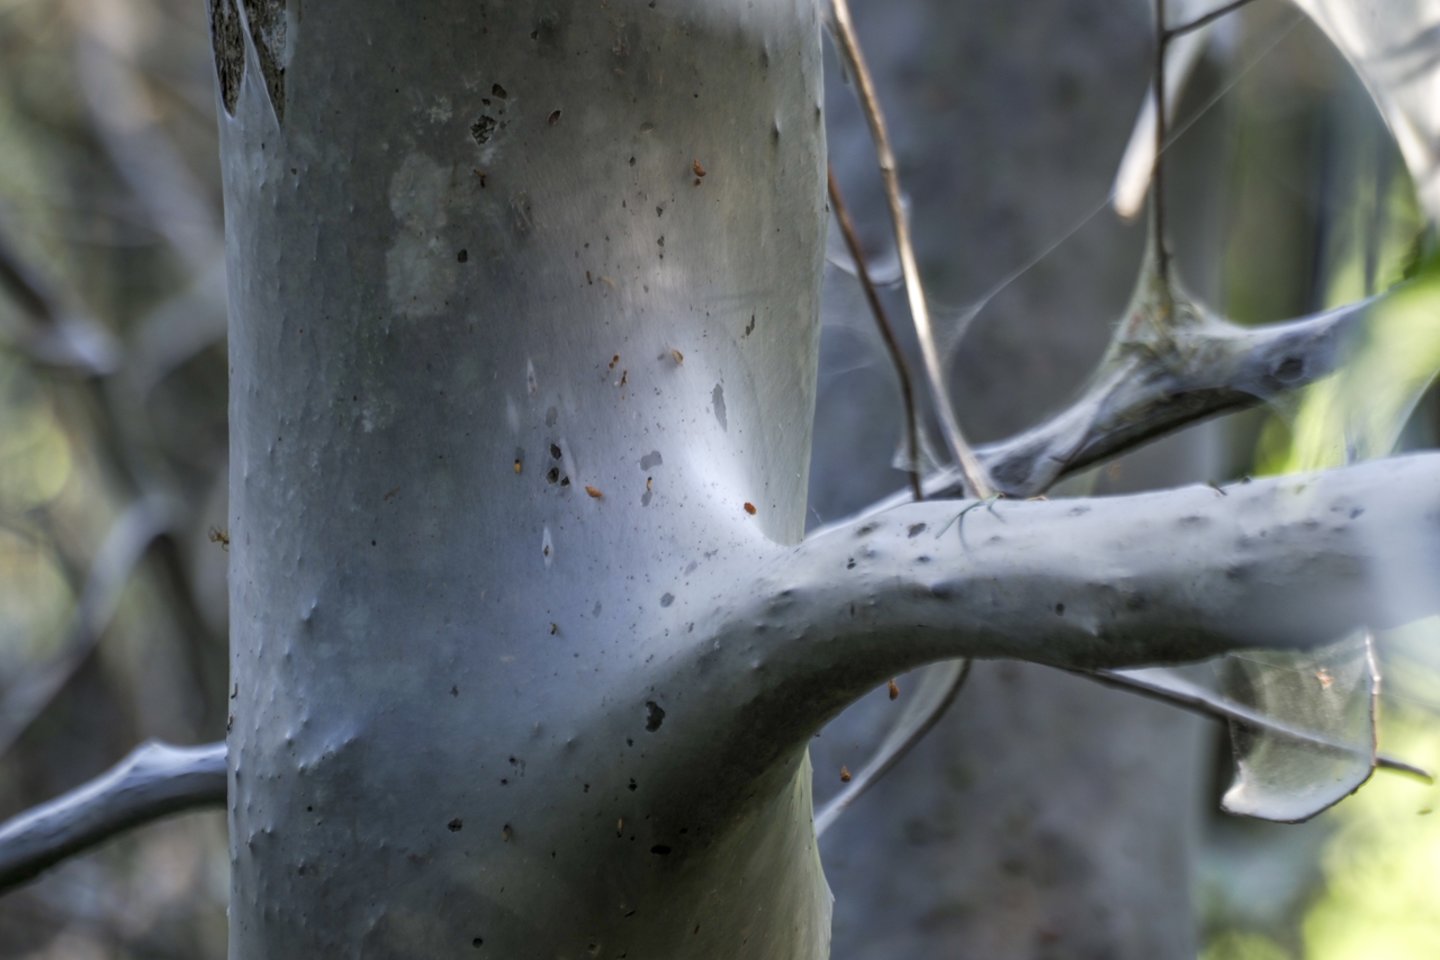  Butėnų kaime aptiktas medis aptrauktas kandžių lervų nunertu tinklu.<br> V. Ščiavinsko nuotr.